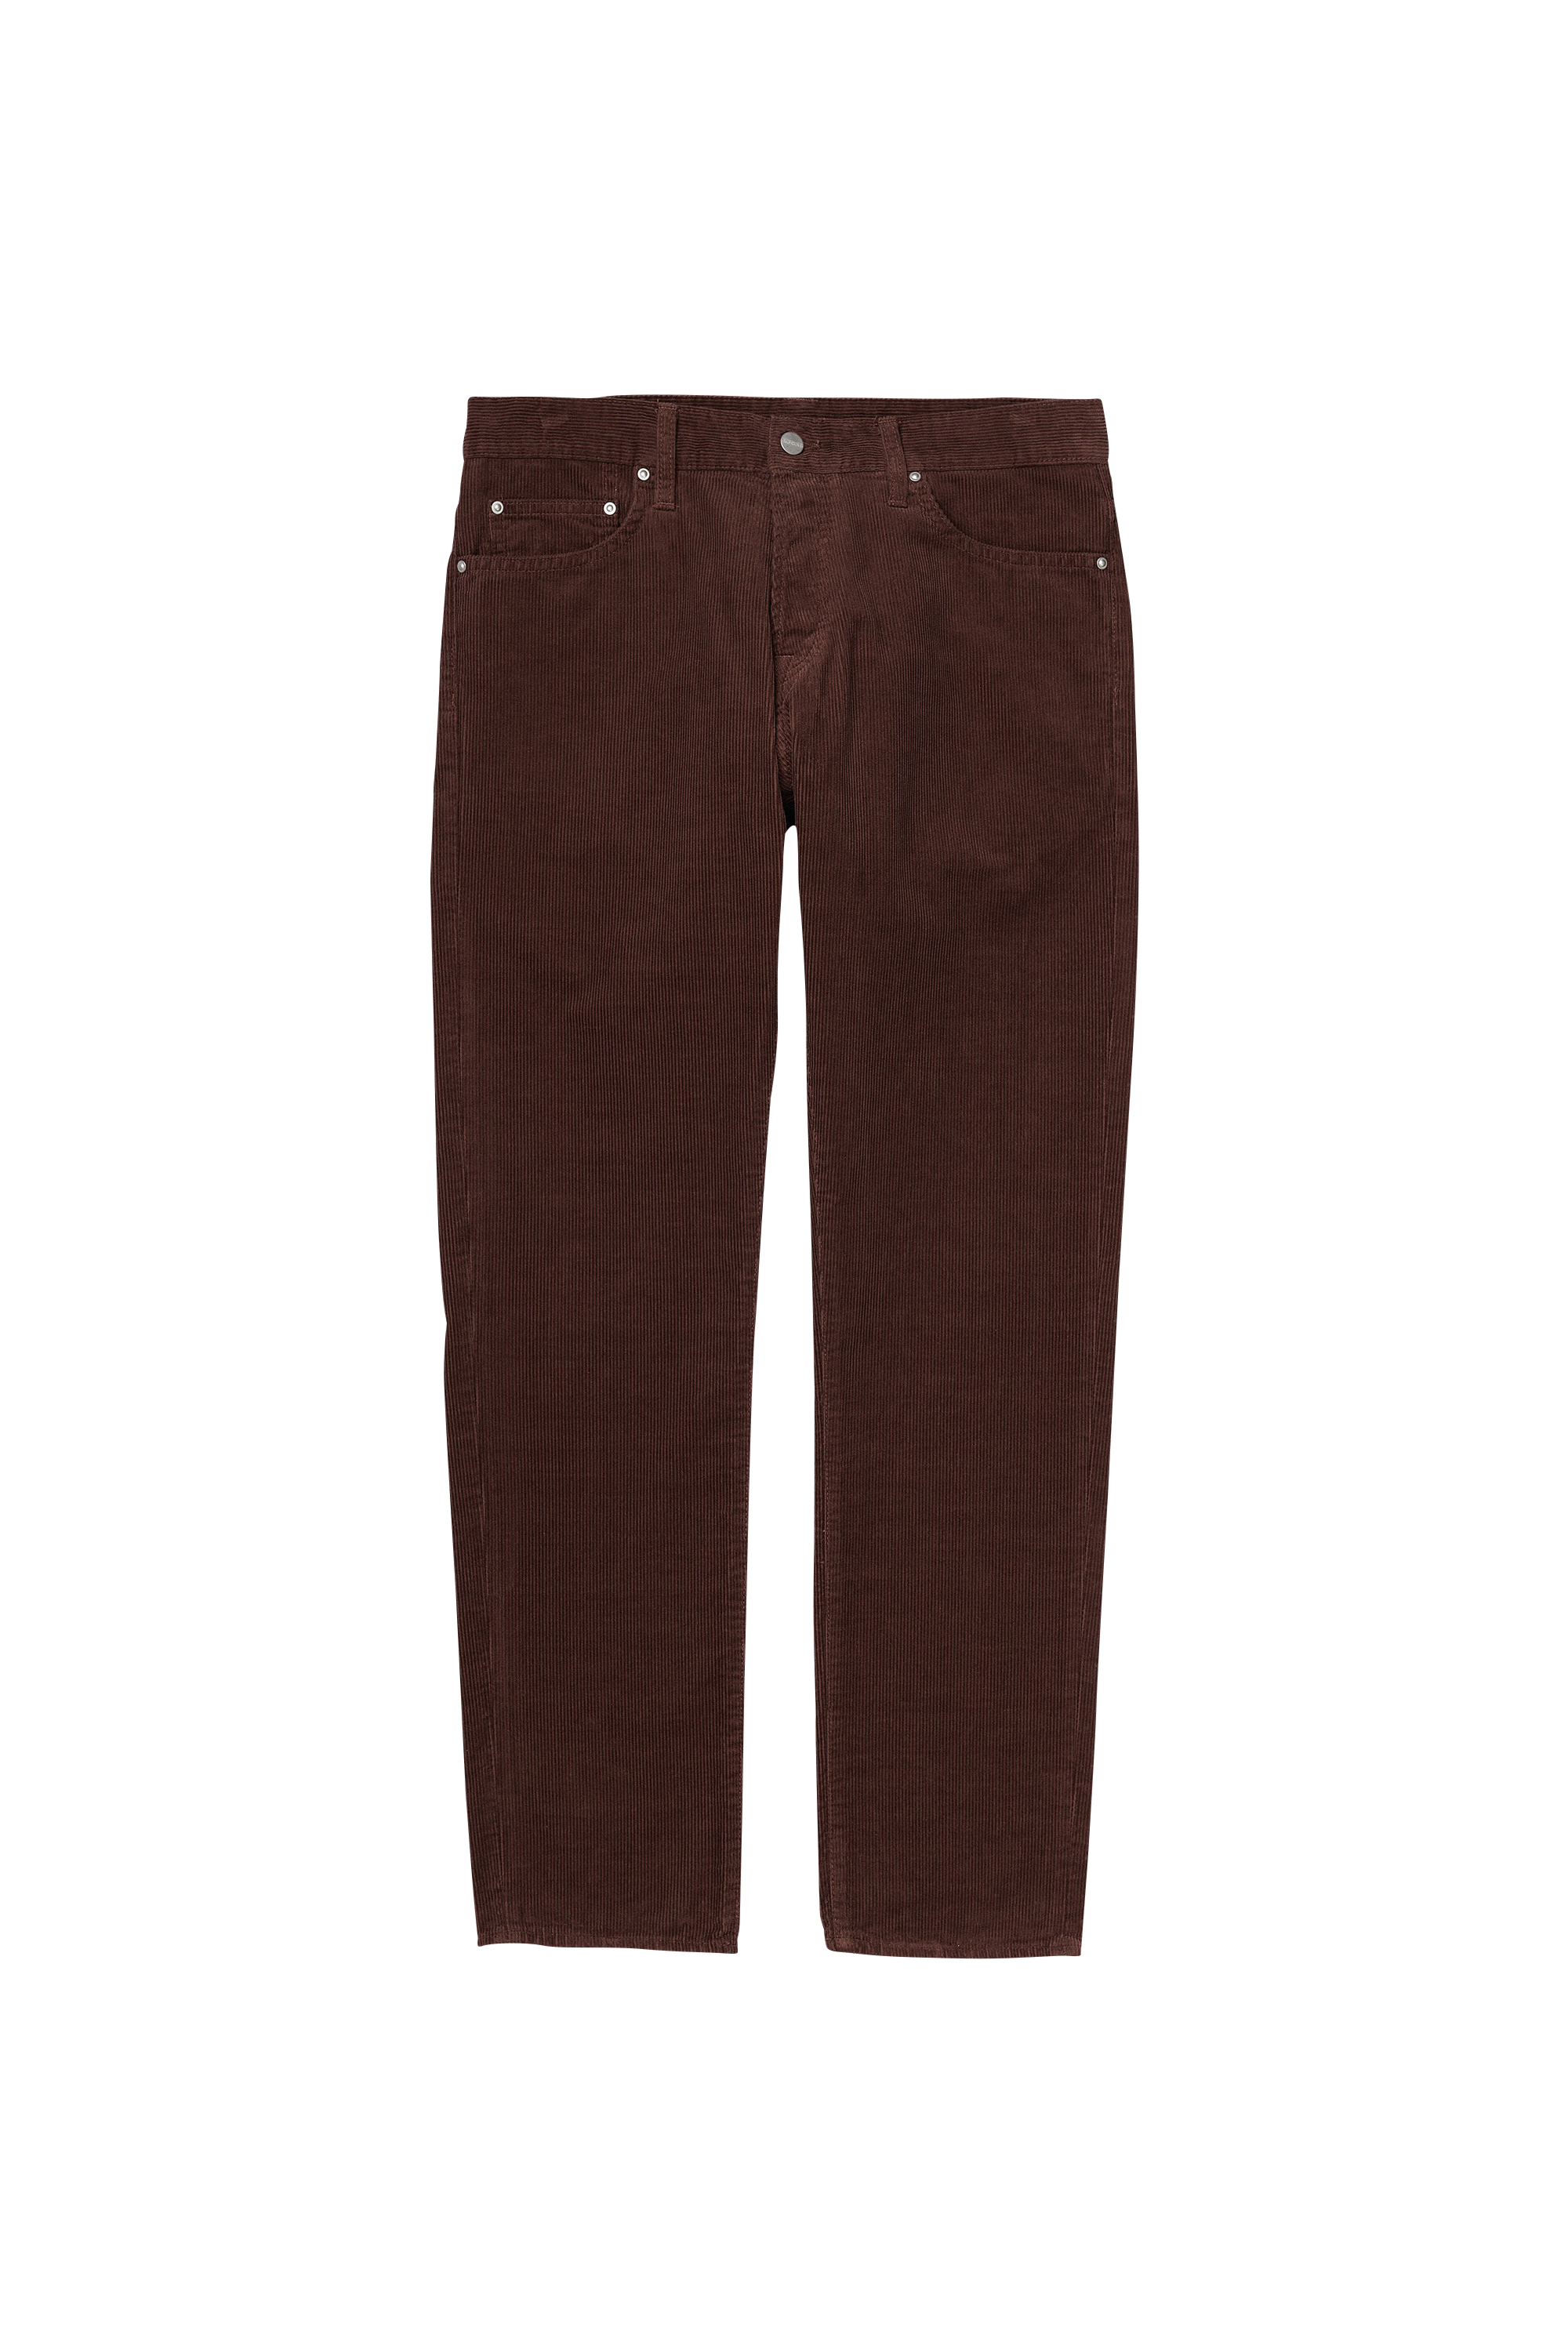 Citadium Homme Vêtements Pantalons & Jeans Jeans Coupe droite Carhartt Wip 